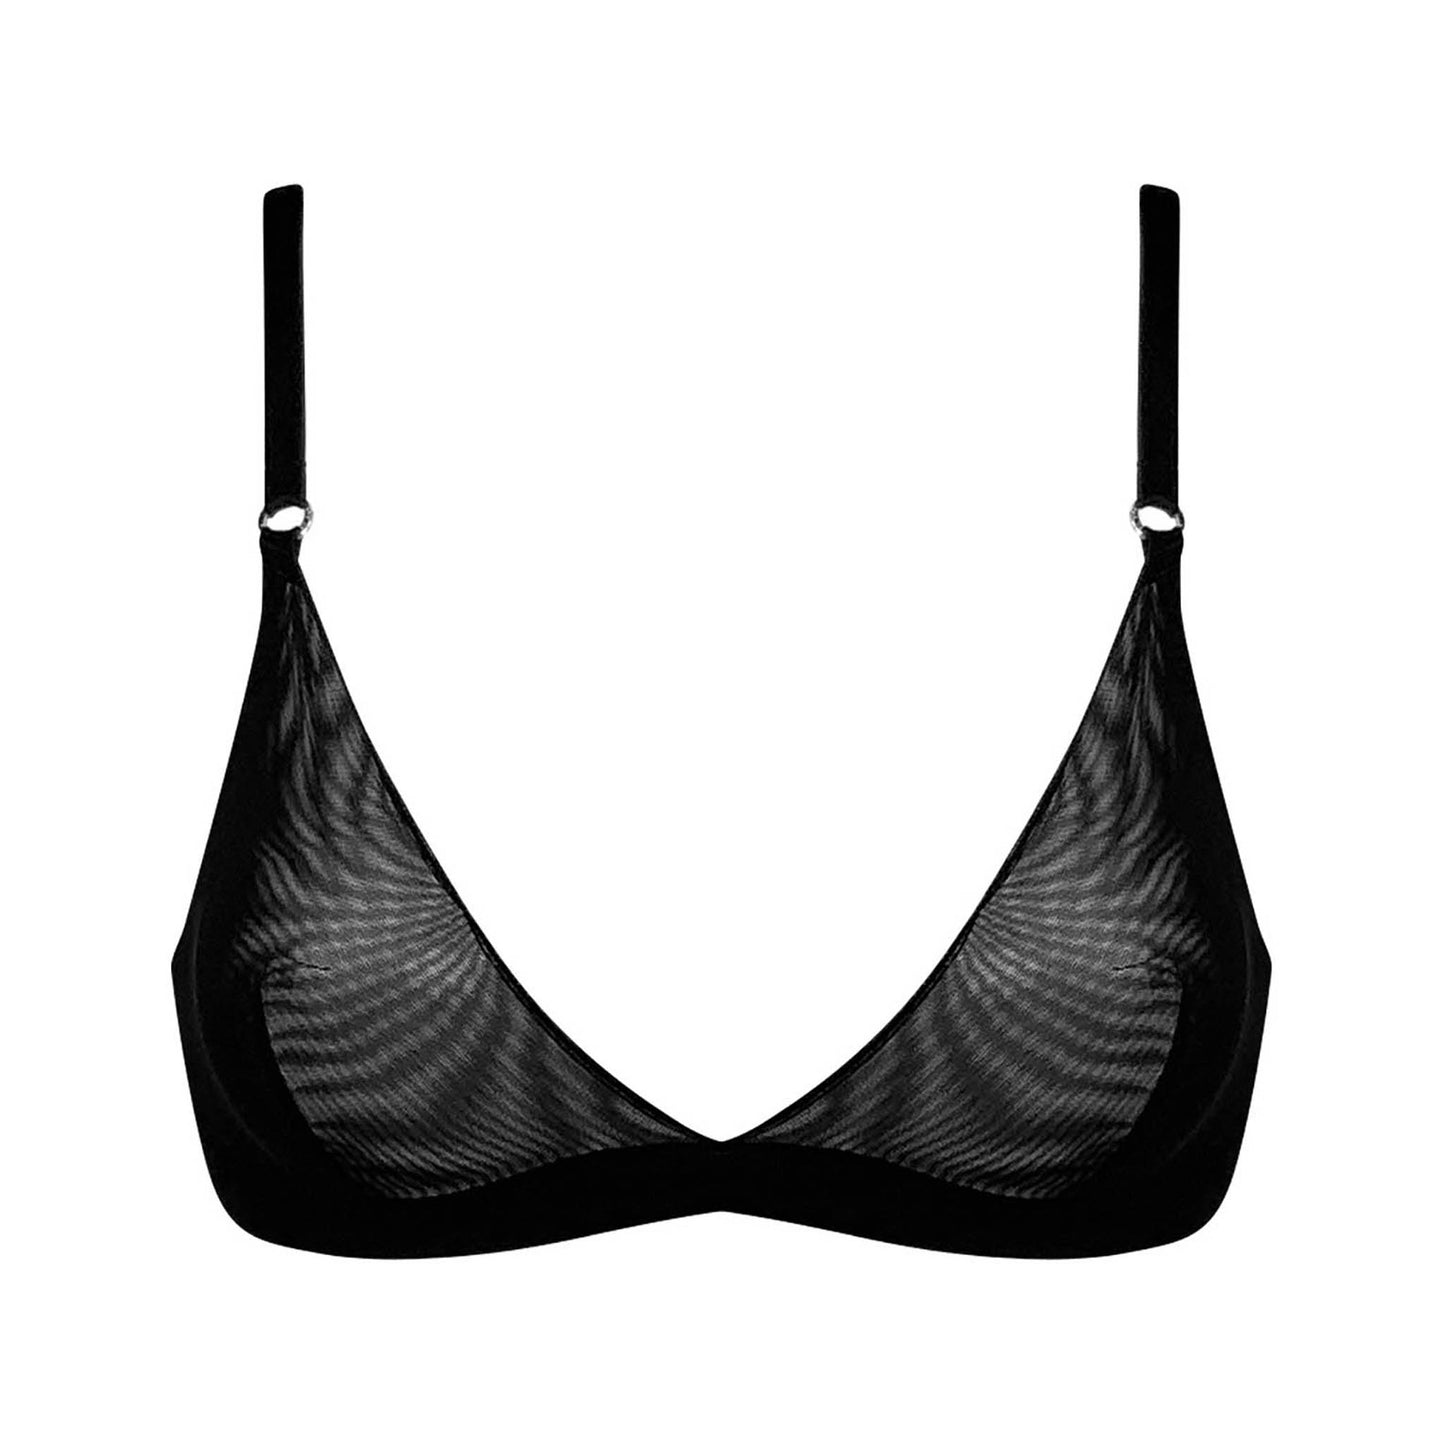 A super comfortable black iconic black triangle bralette bra.